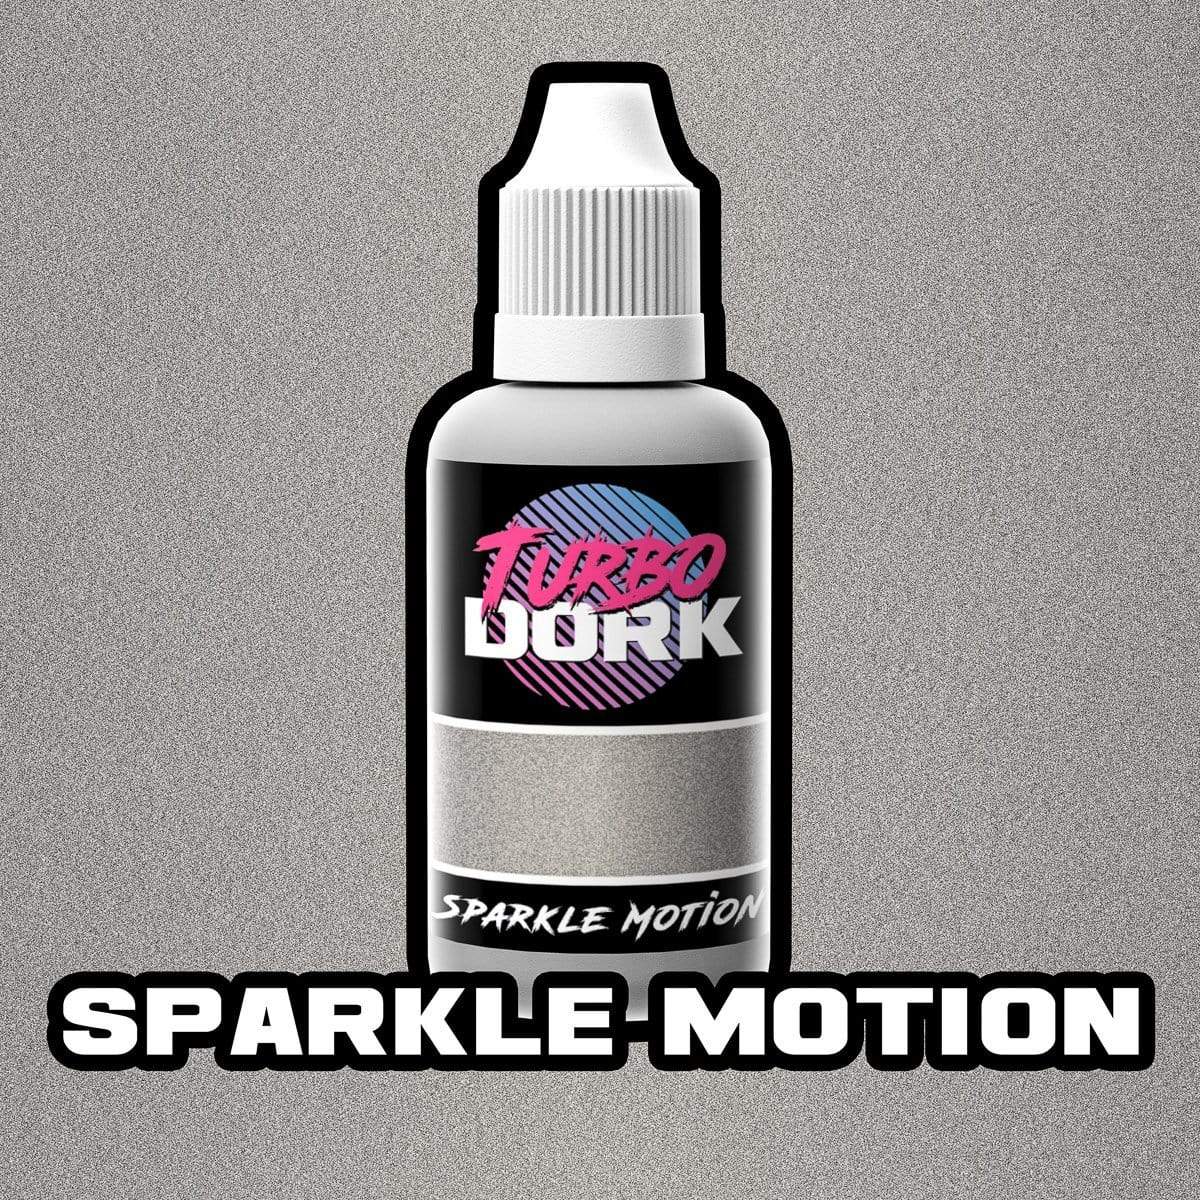 Sparkle Motion Flourish Acrylic Paint Metallic Turbo Dork Exit 23 Games Sparkle Motion Flourish Acrylic Paint